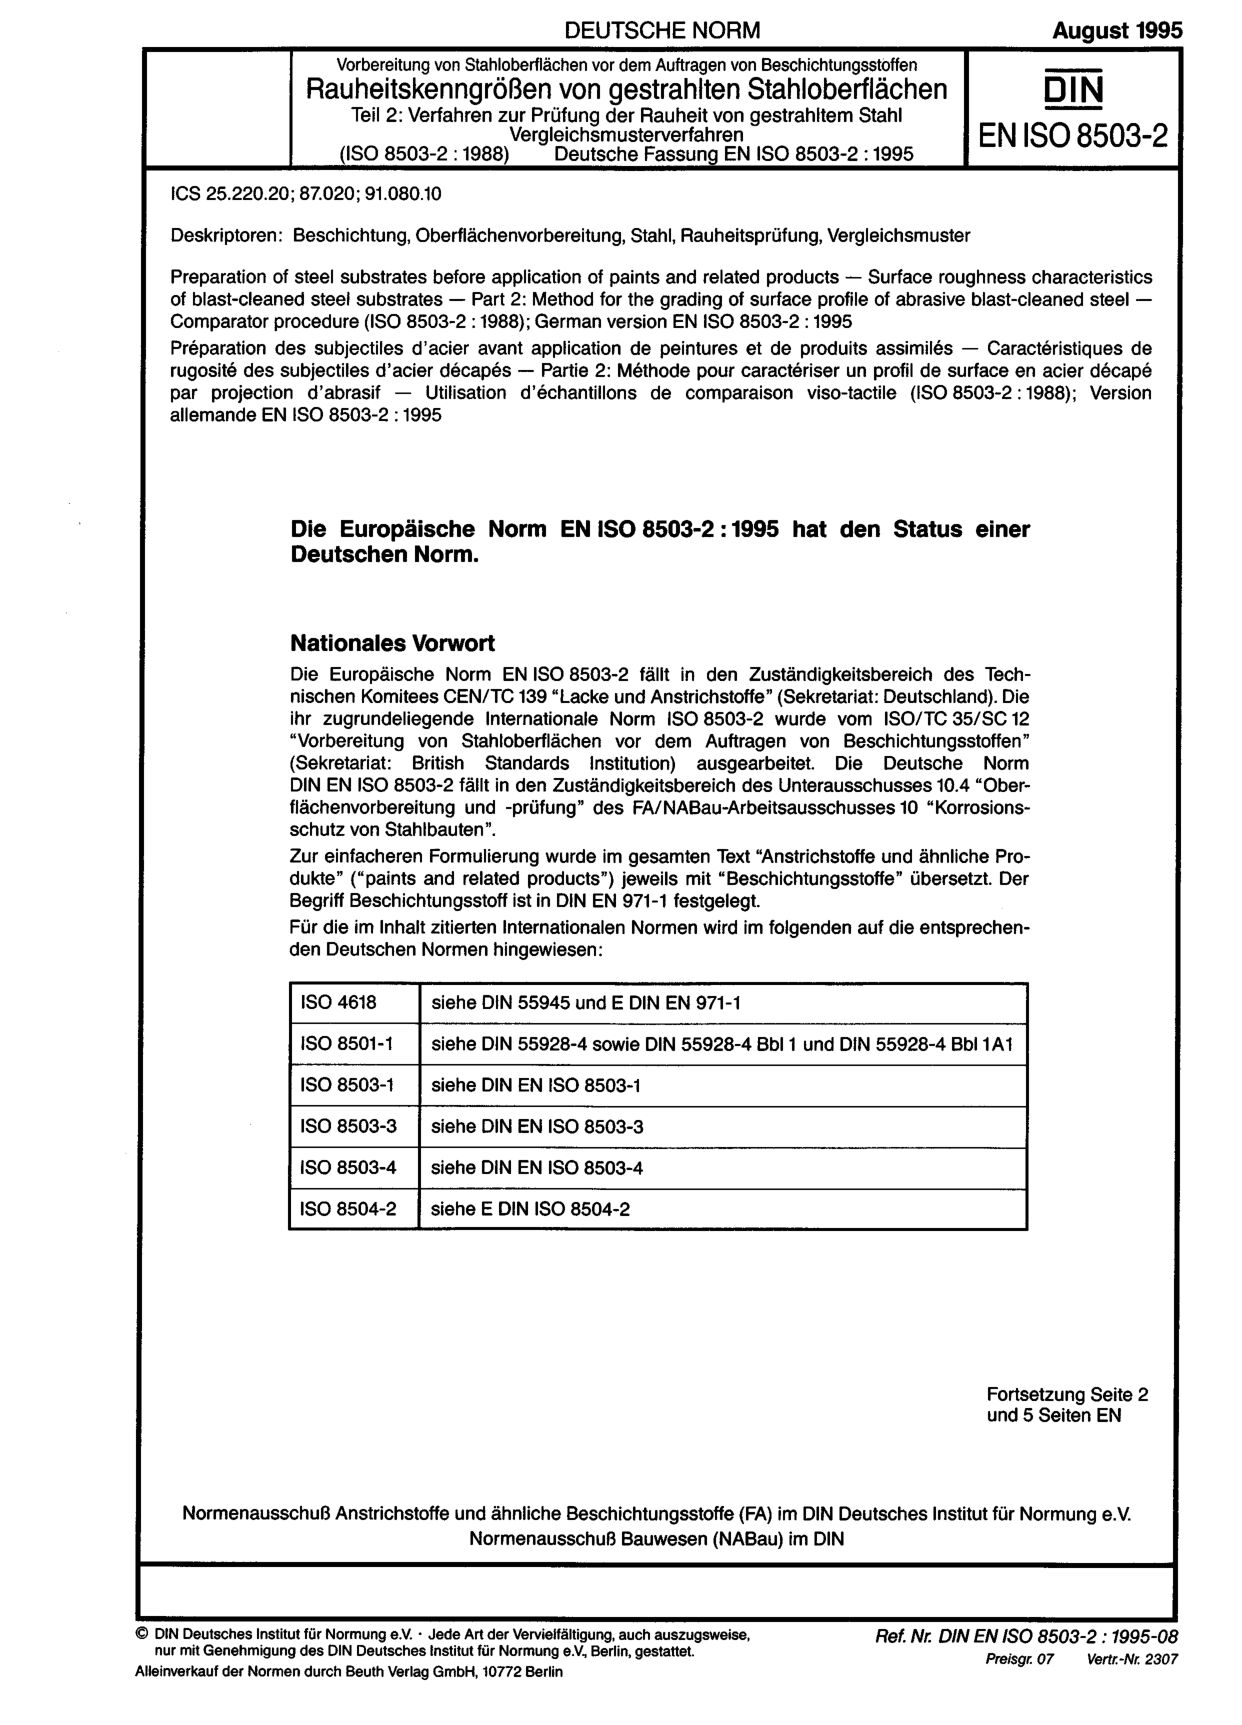 DIN EN ISO 8503-2:1995封面图